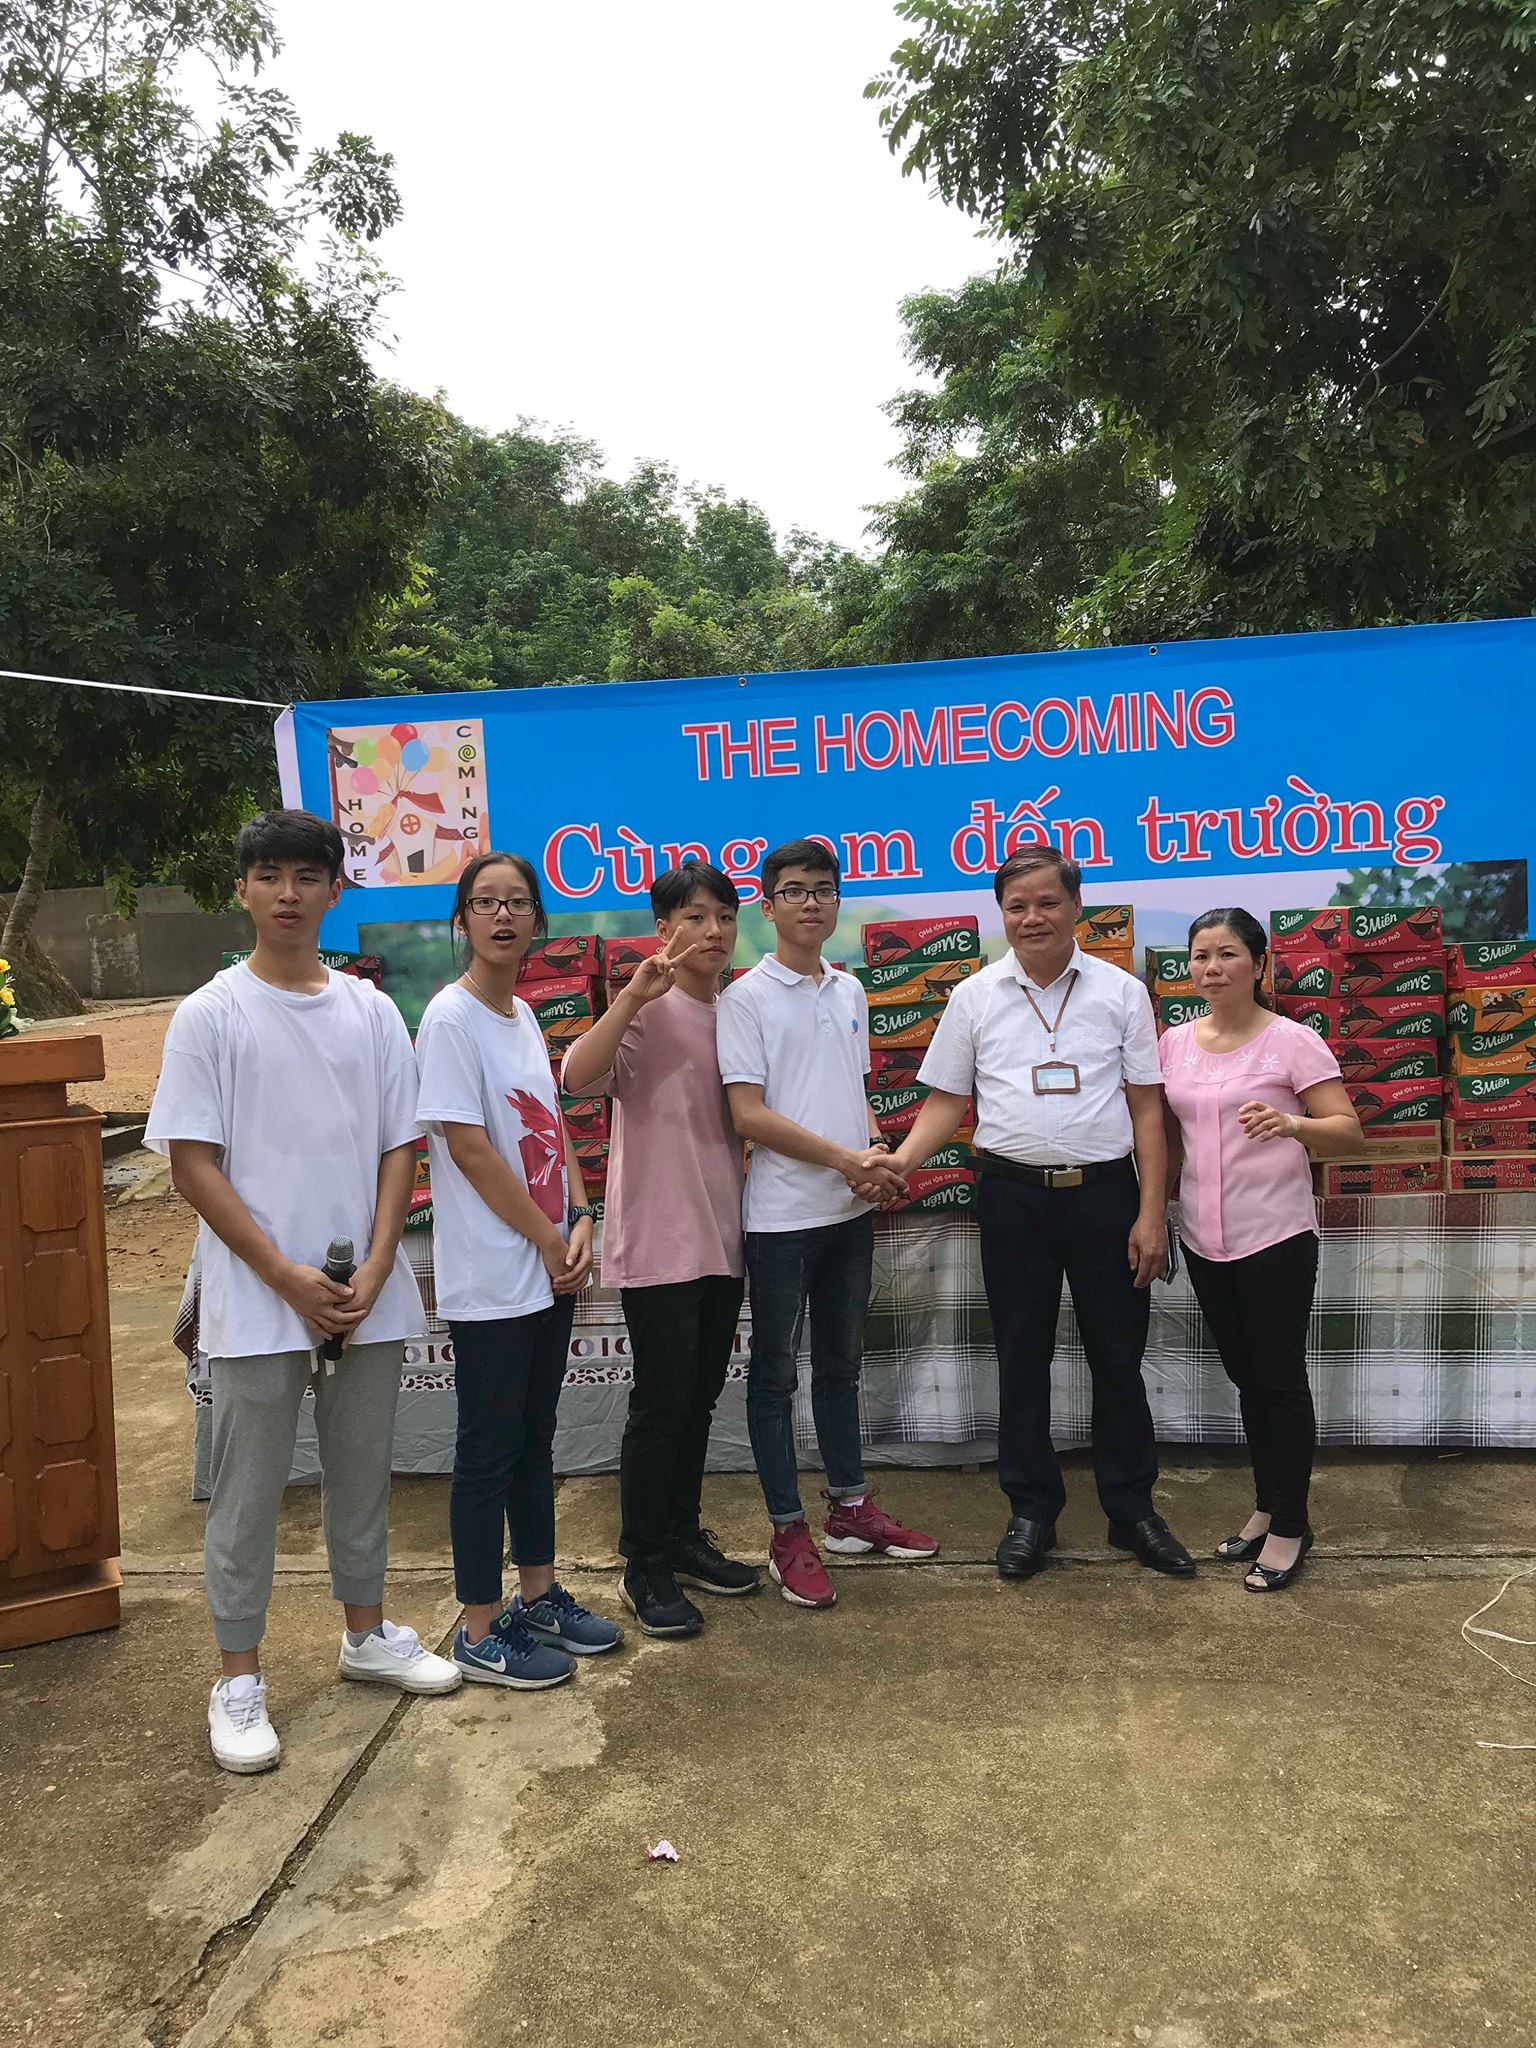 4 thành viên của dự án Homecoming đến từ các trường THPT trên địa bàn Hà Nội (từ trái qua phải)